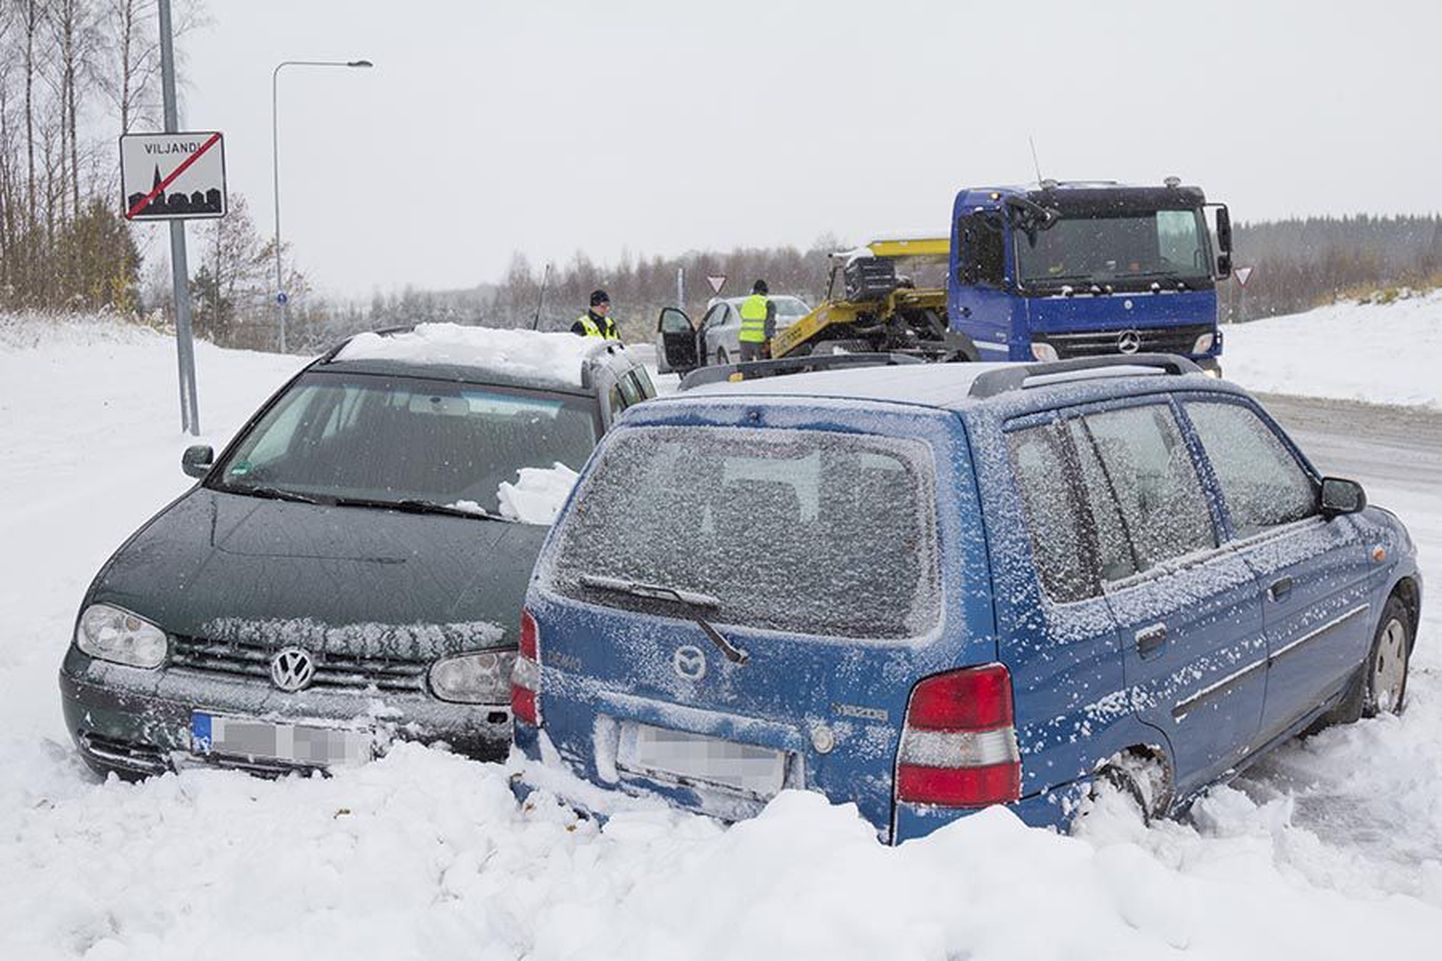 Kolme auto mõlkimisega lõppenud avarii Viljandis Reinu teel oli õnnelik õnnetus, sest ükski inimene viga ei saanud. Ühtegi raskemat avariid Viljandimaal eile ei registreeritud.